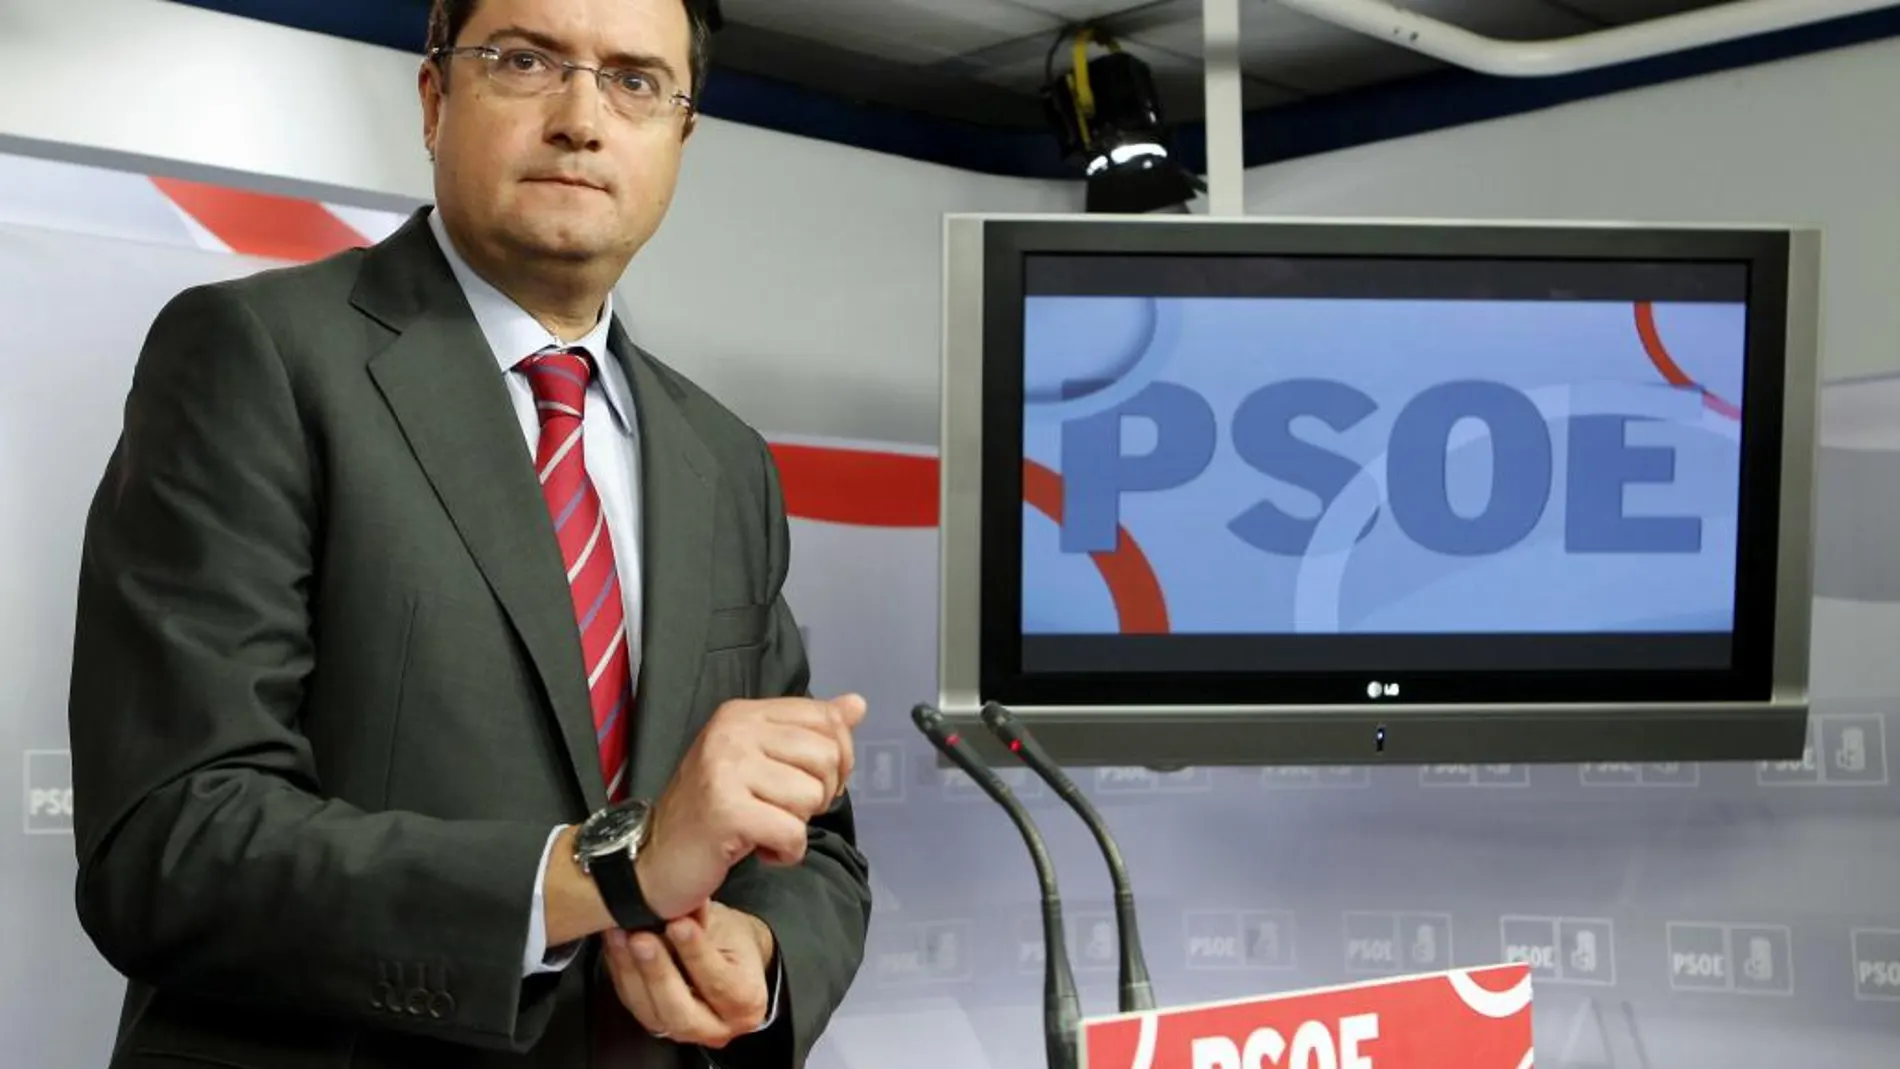 El secretario de Organización del PSOE, Oscar López